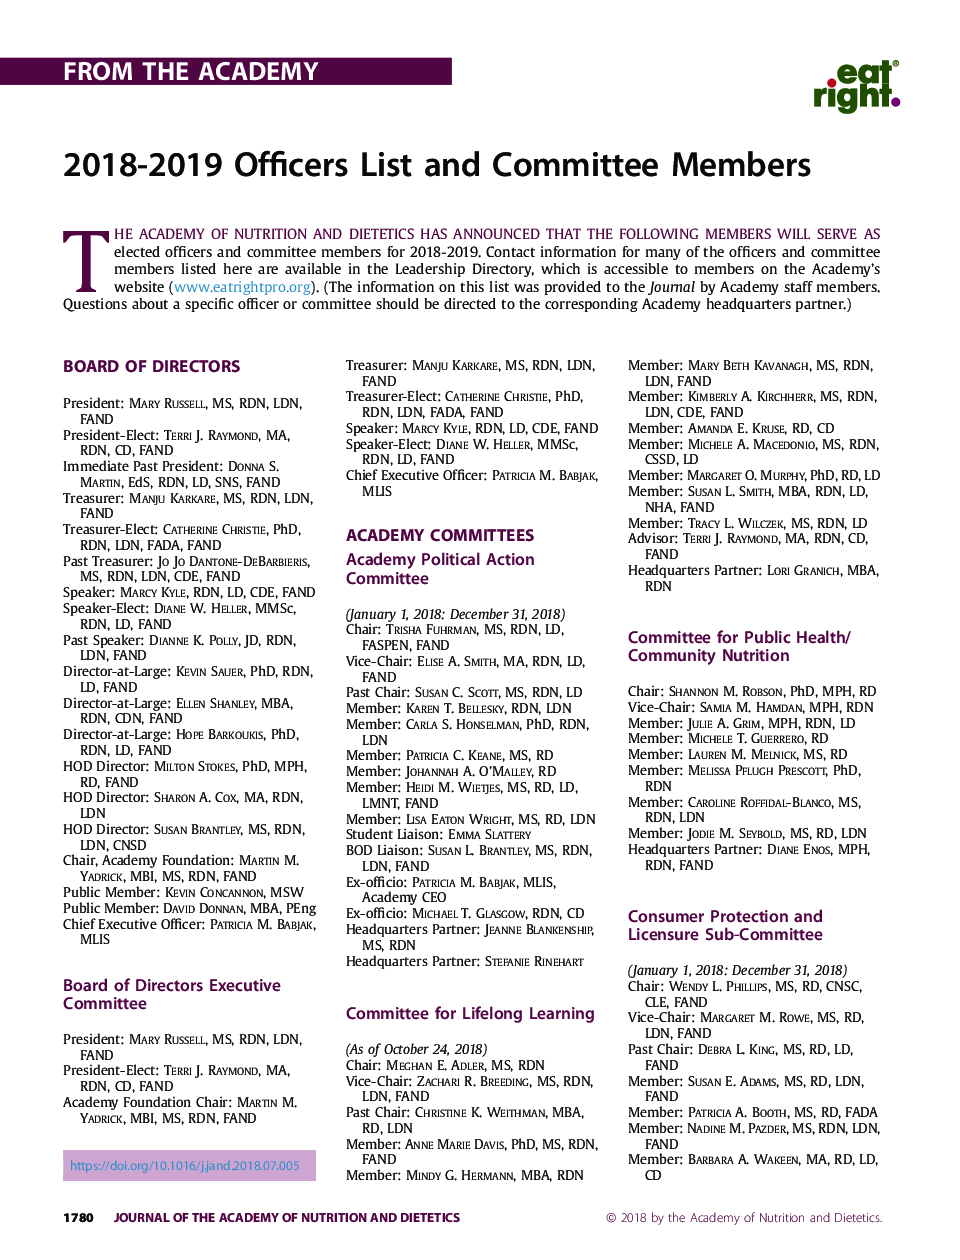 هیئت مدیره 2018-2019 و اعضای کمیته